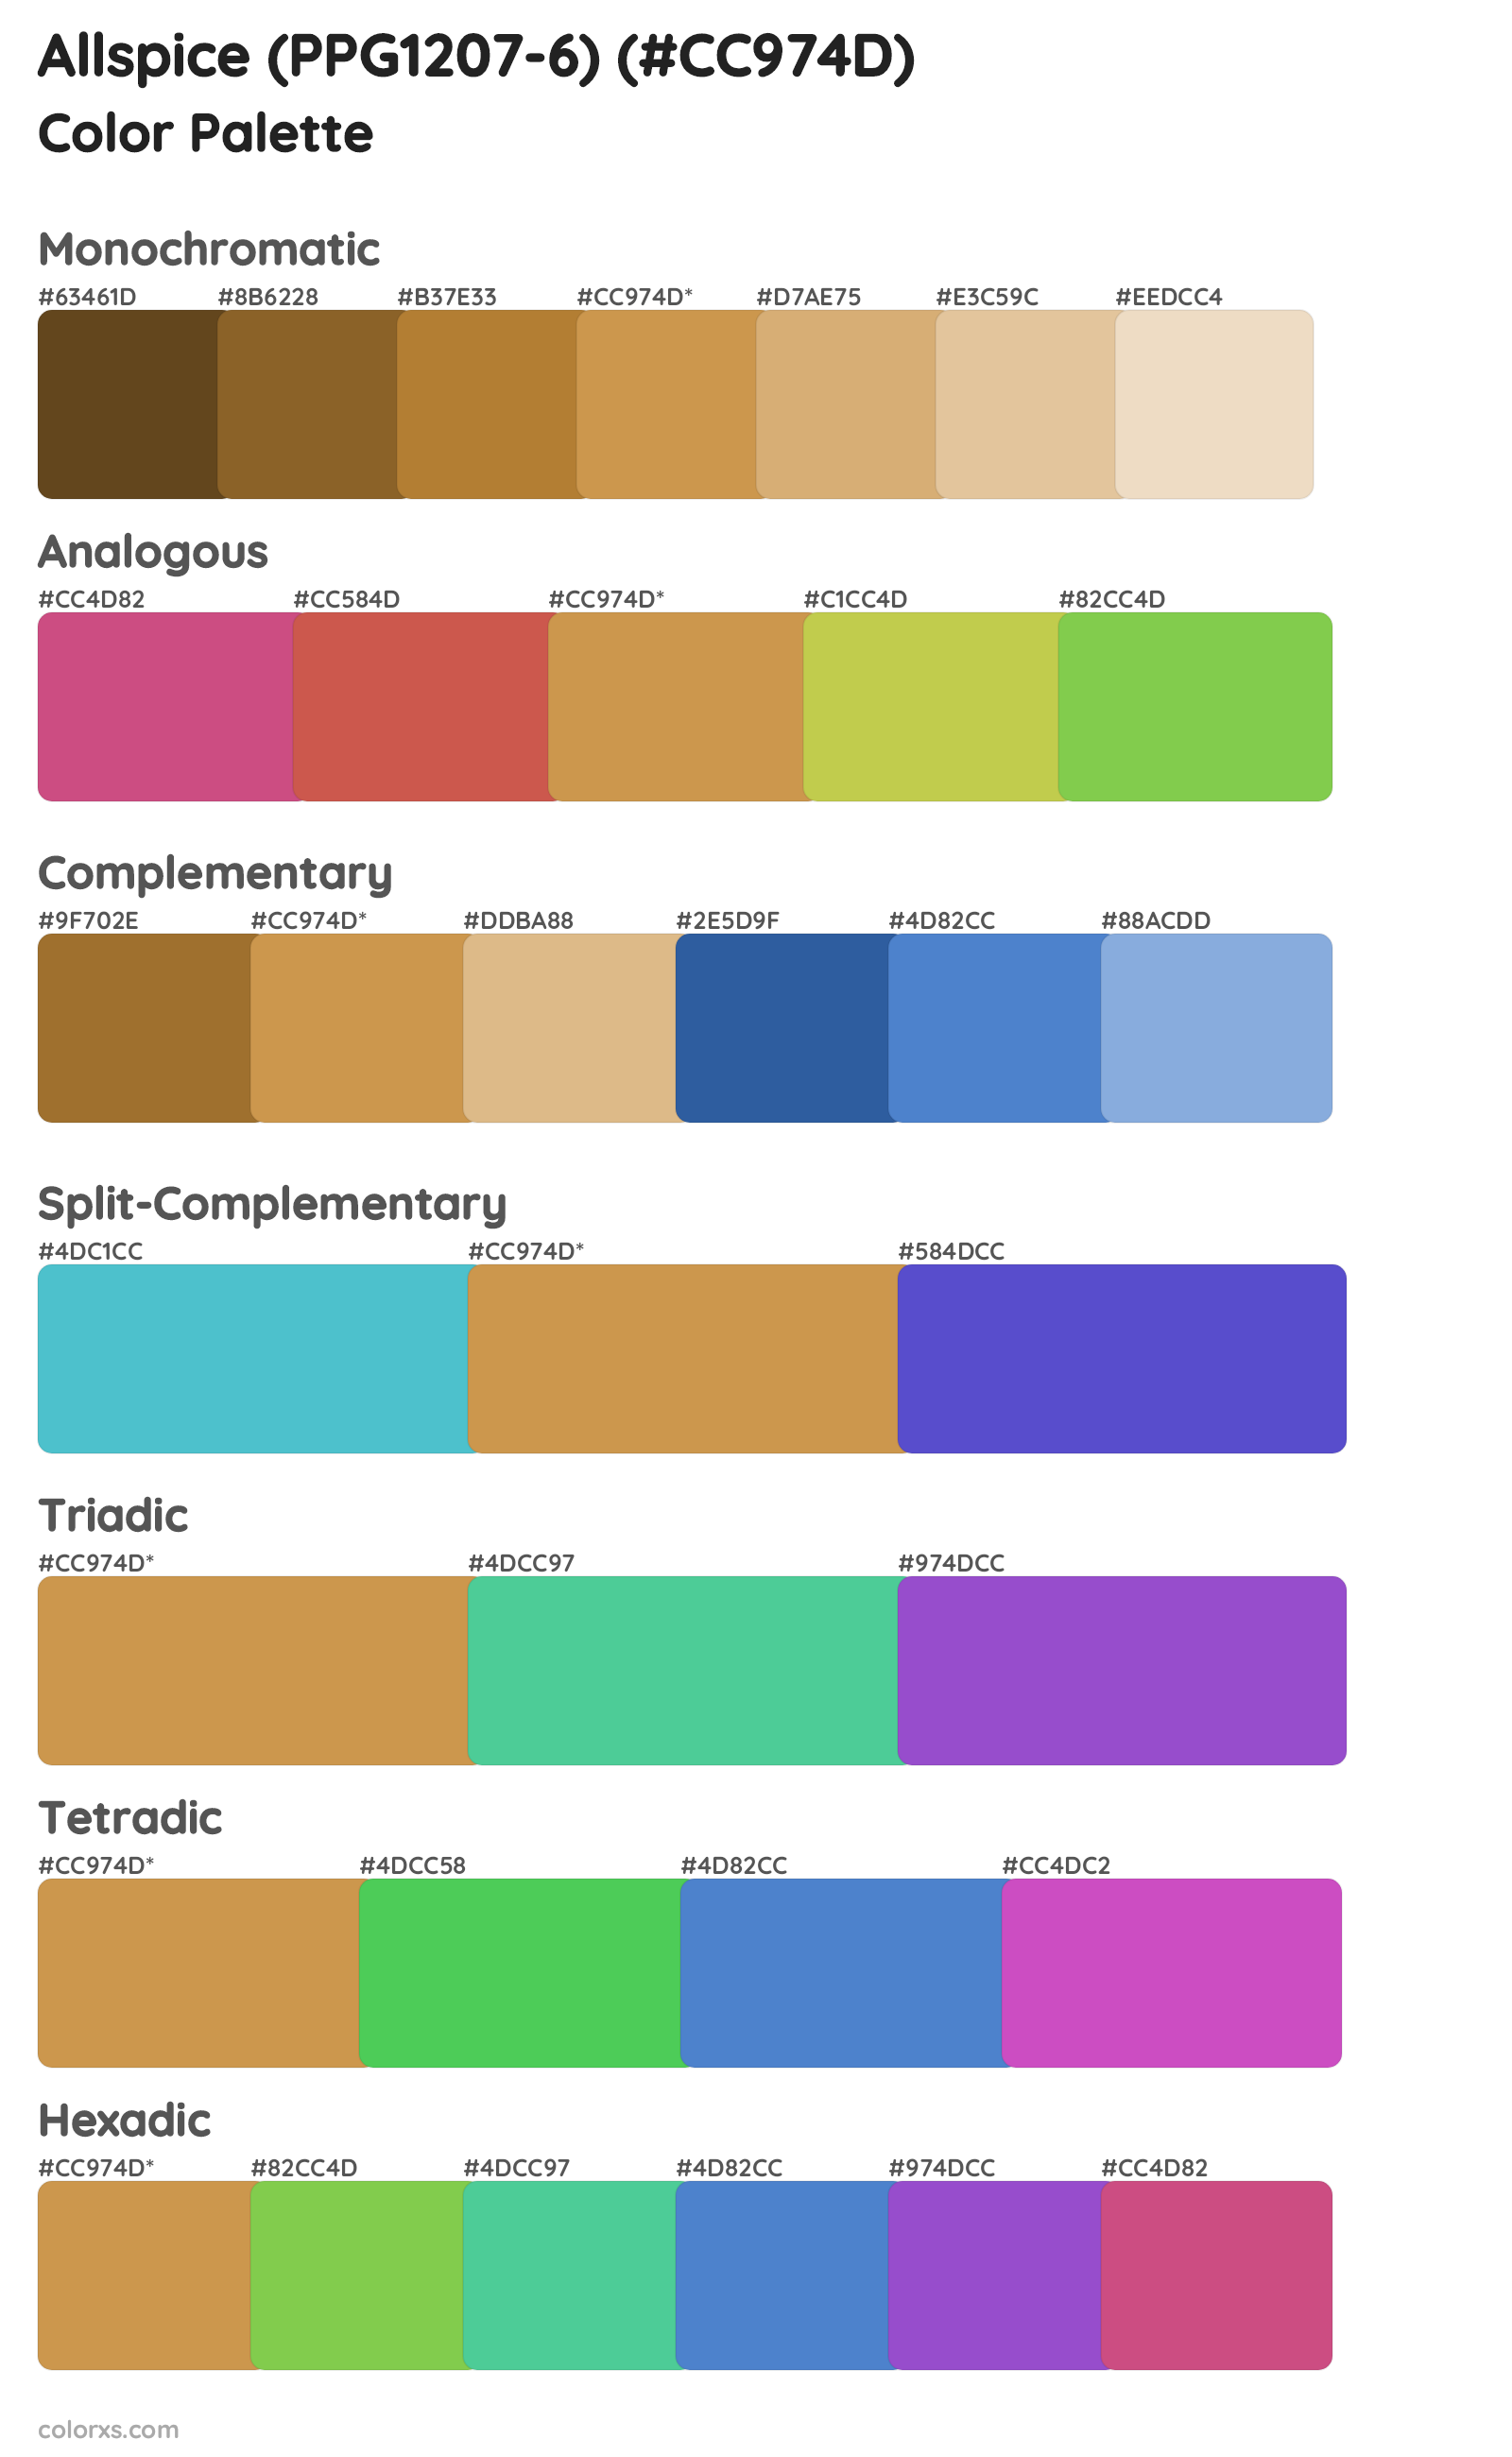 Allspice (PPG1207-6) Color Scheme Palettes